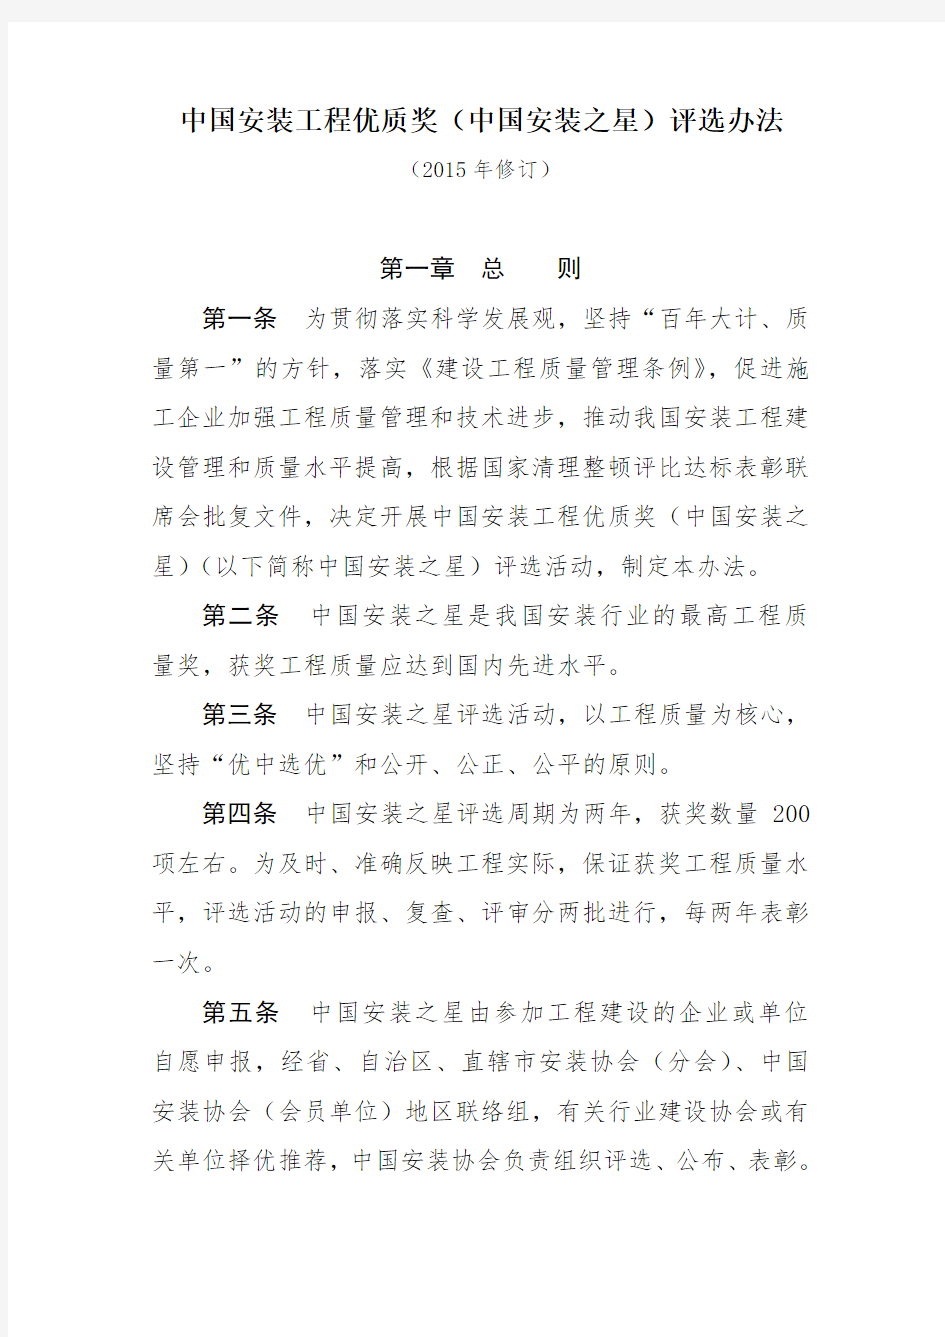 中国安装工程优质奖(中国安装之星)评选办法 (2015版)